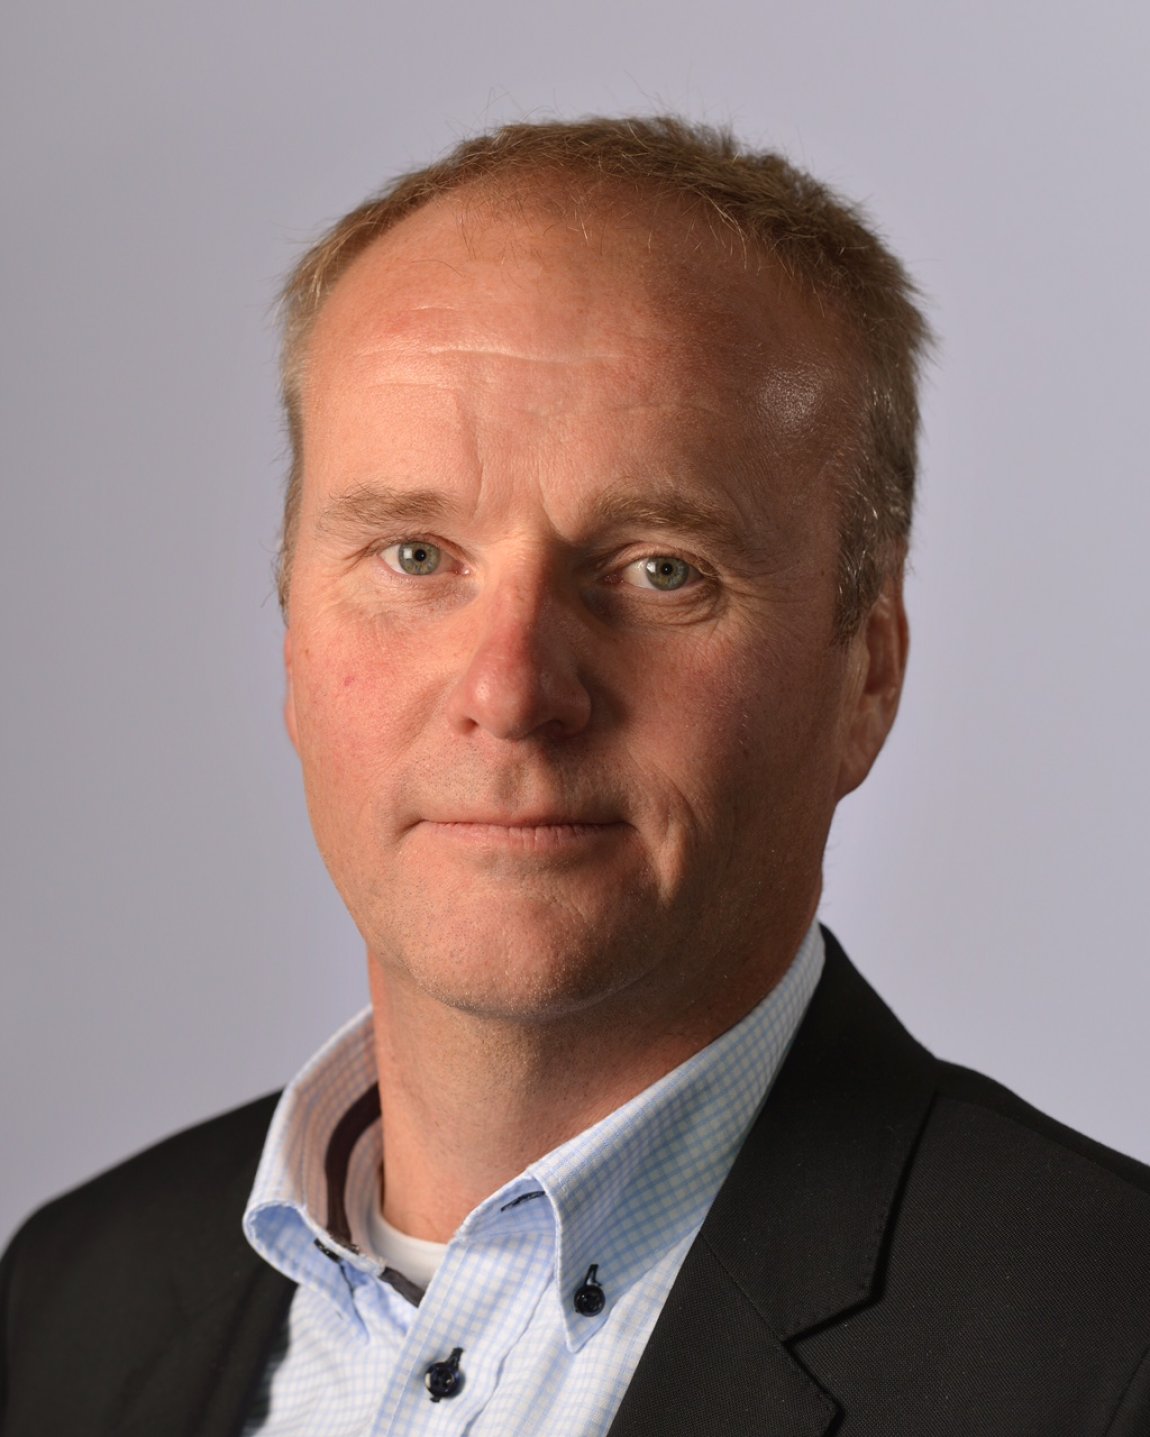 Fylkesting 2015
Olav Urbø